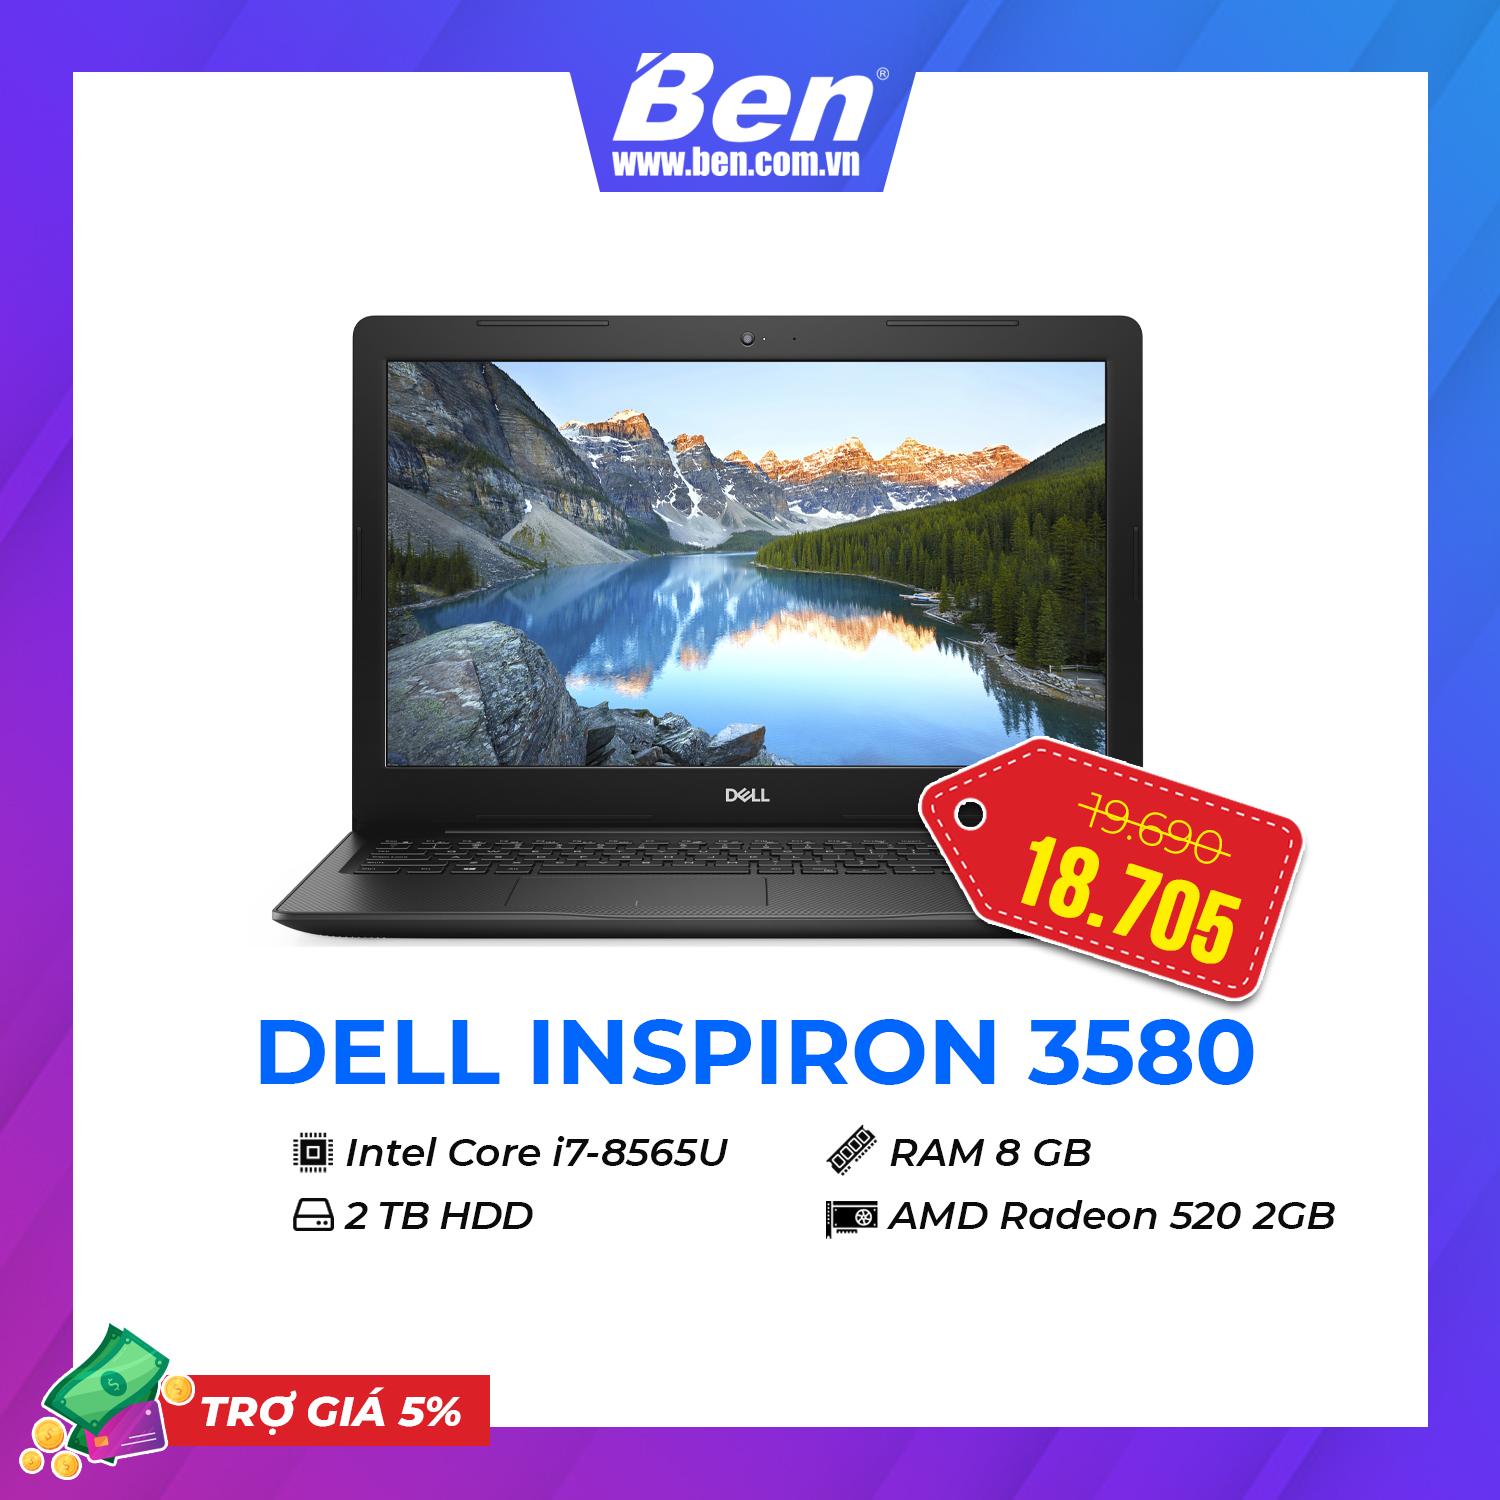 Dell Inspiron 3580